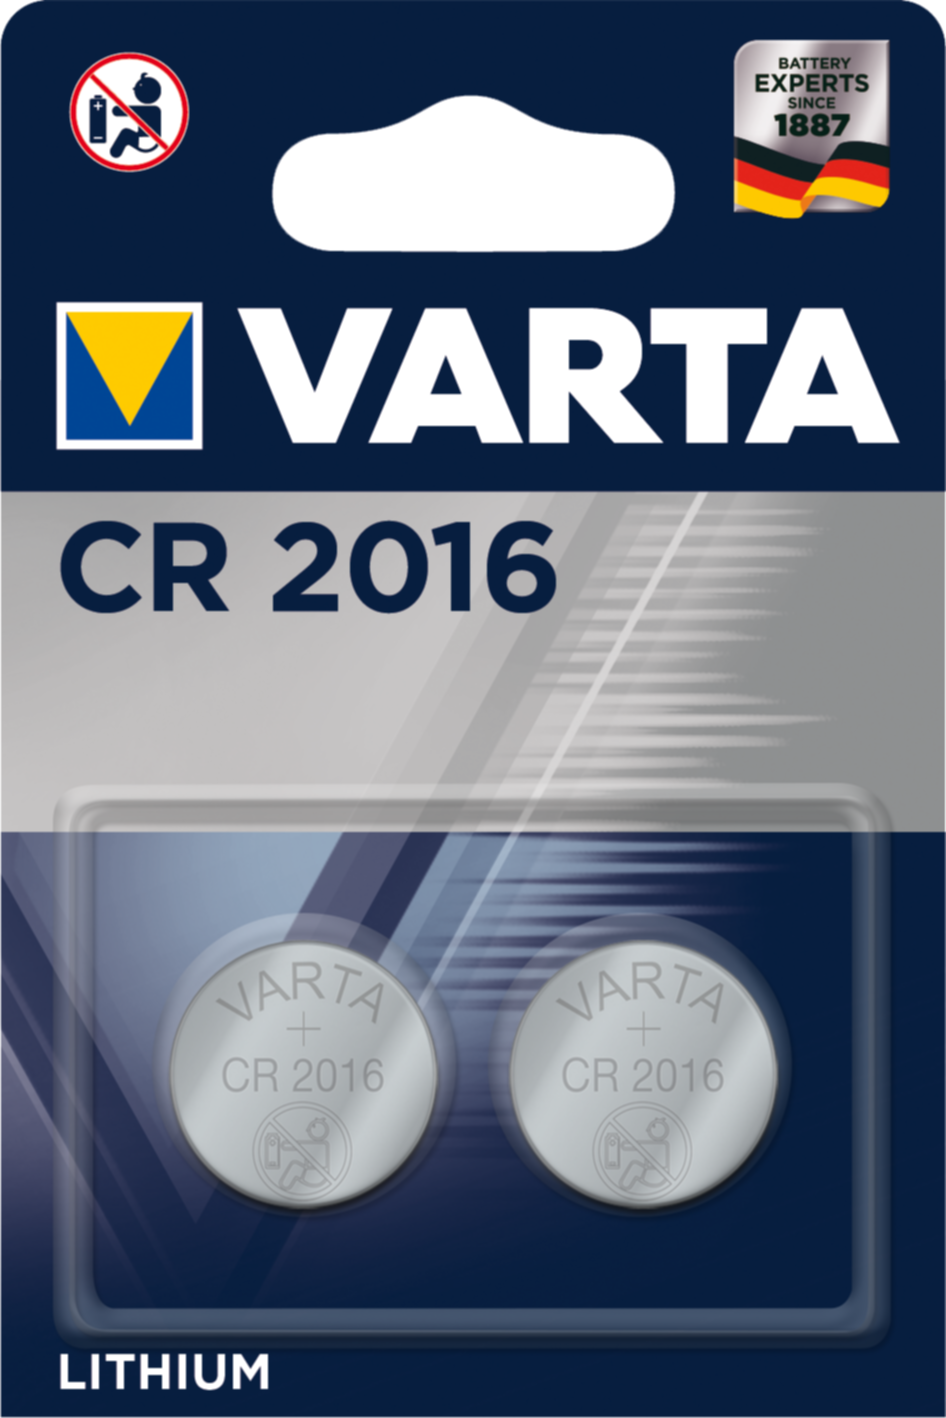 2 piles lithium CR2016 - VARTA